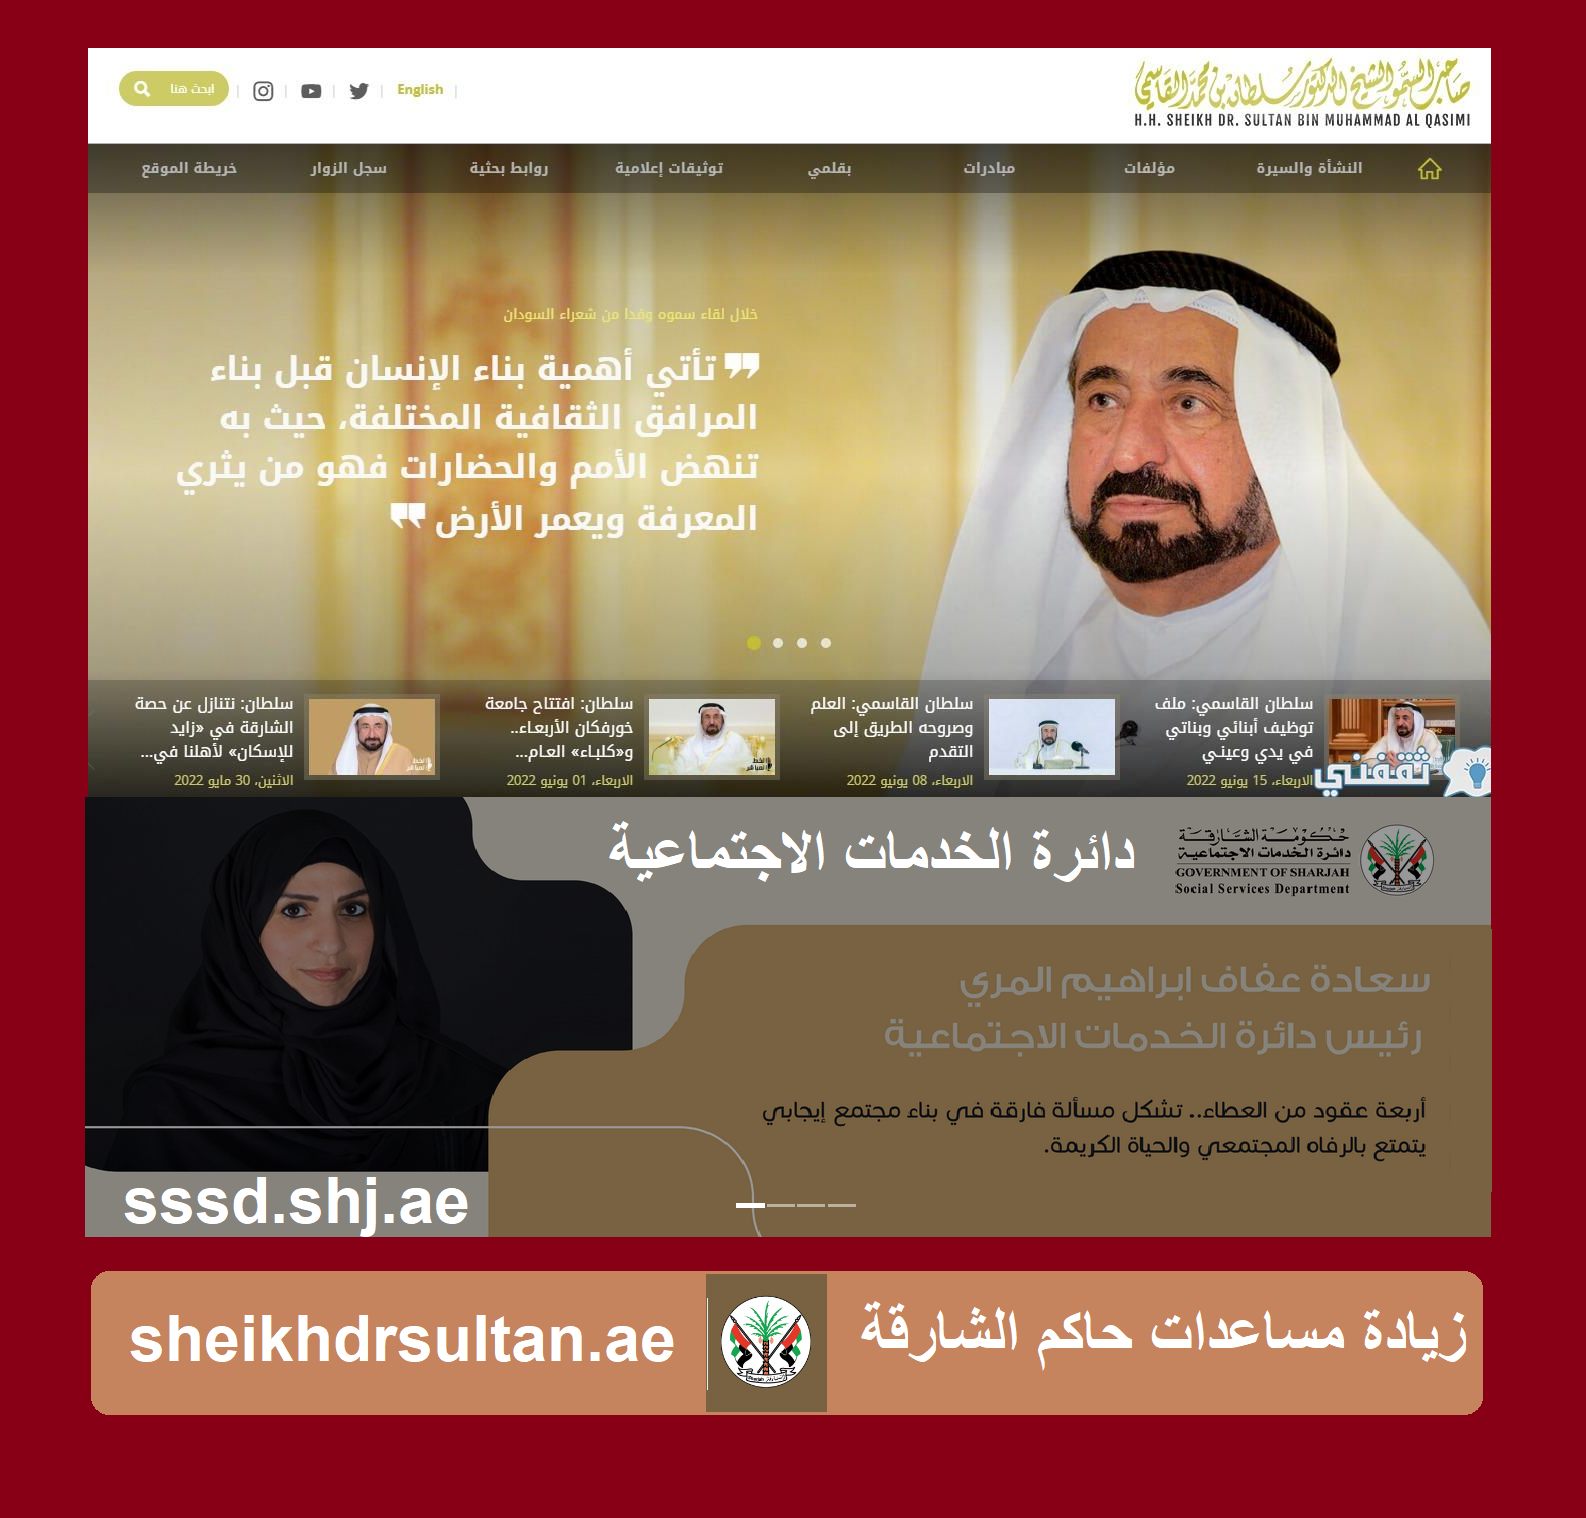 رابط مساعدات حاكم الشارقة لأصحاب الحاجات دائرة الخدمات الاجتماعية الإماراتية sssd.shj.ae